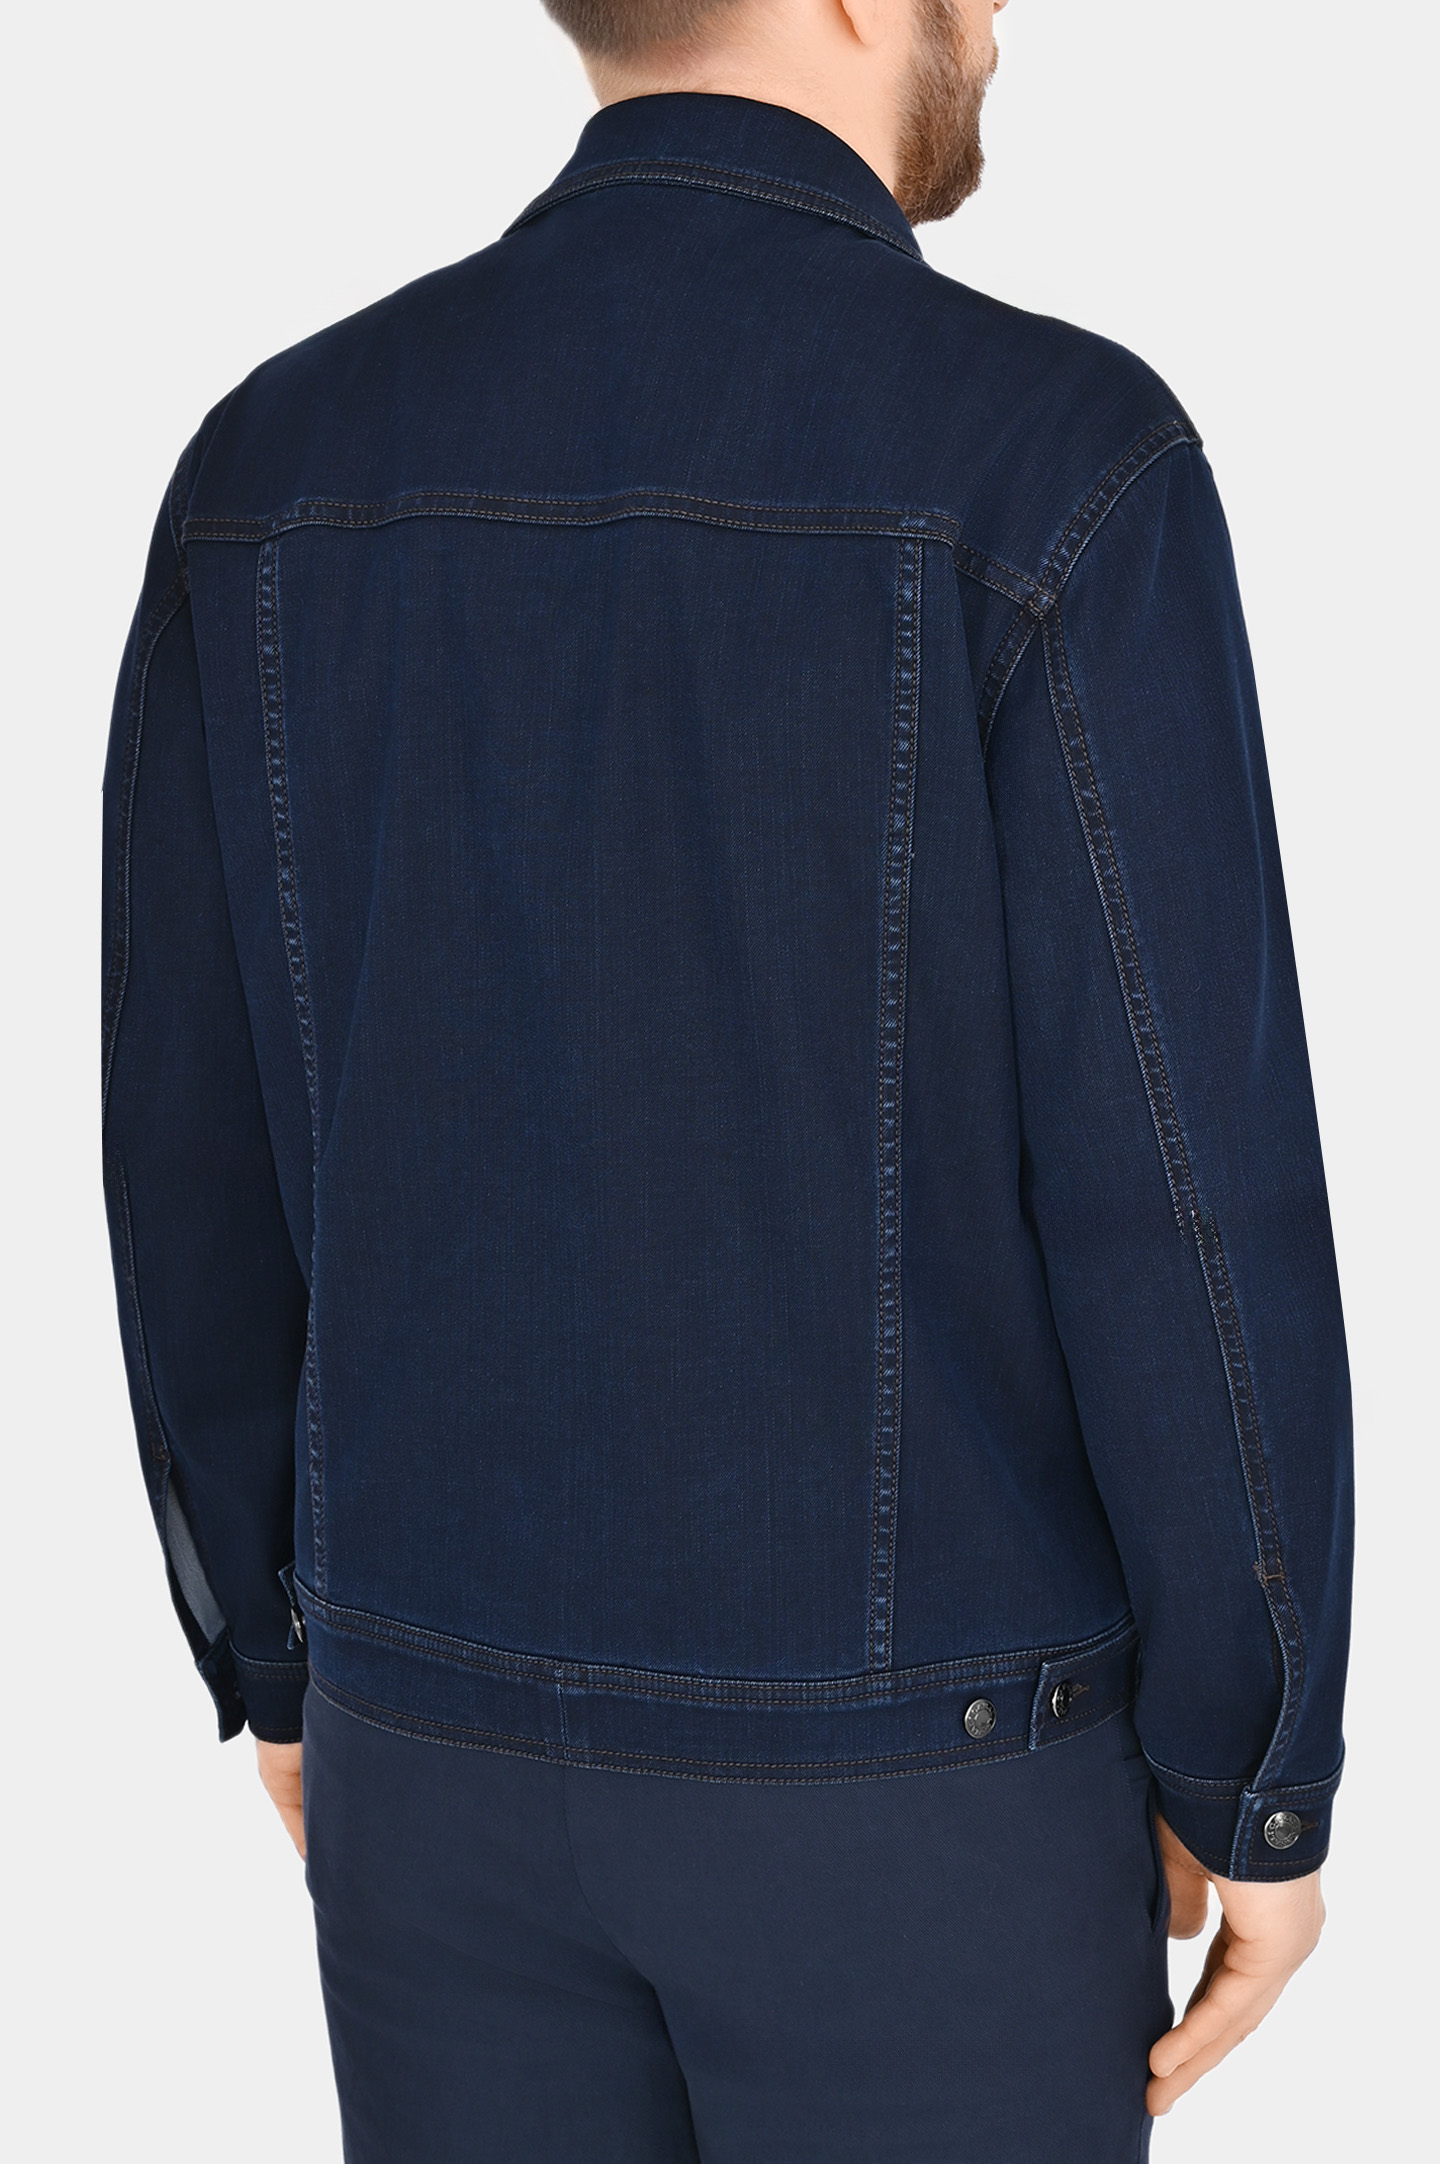 Джинсовая куртка с карманами CANALI SG02964 O40895W, цвет: Темно-синий, Мужской